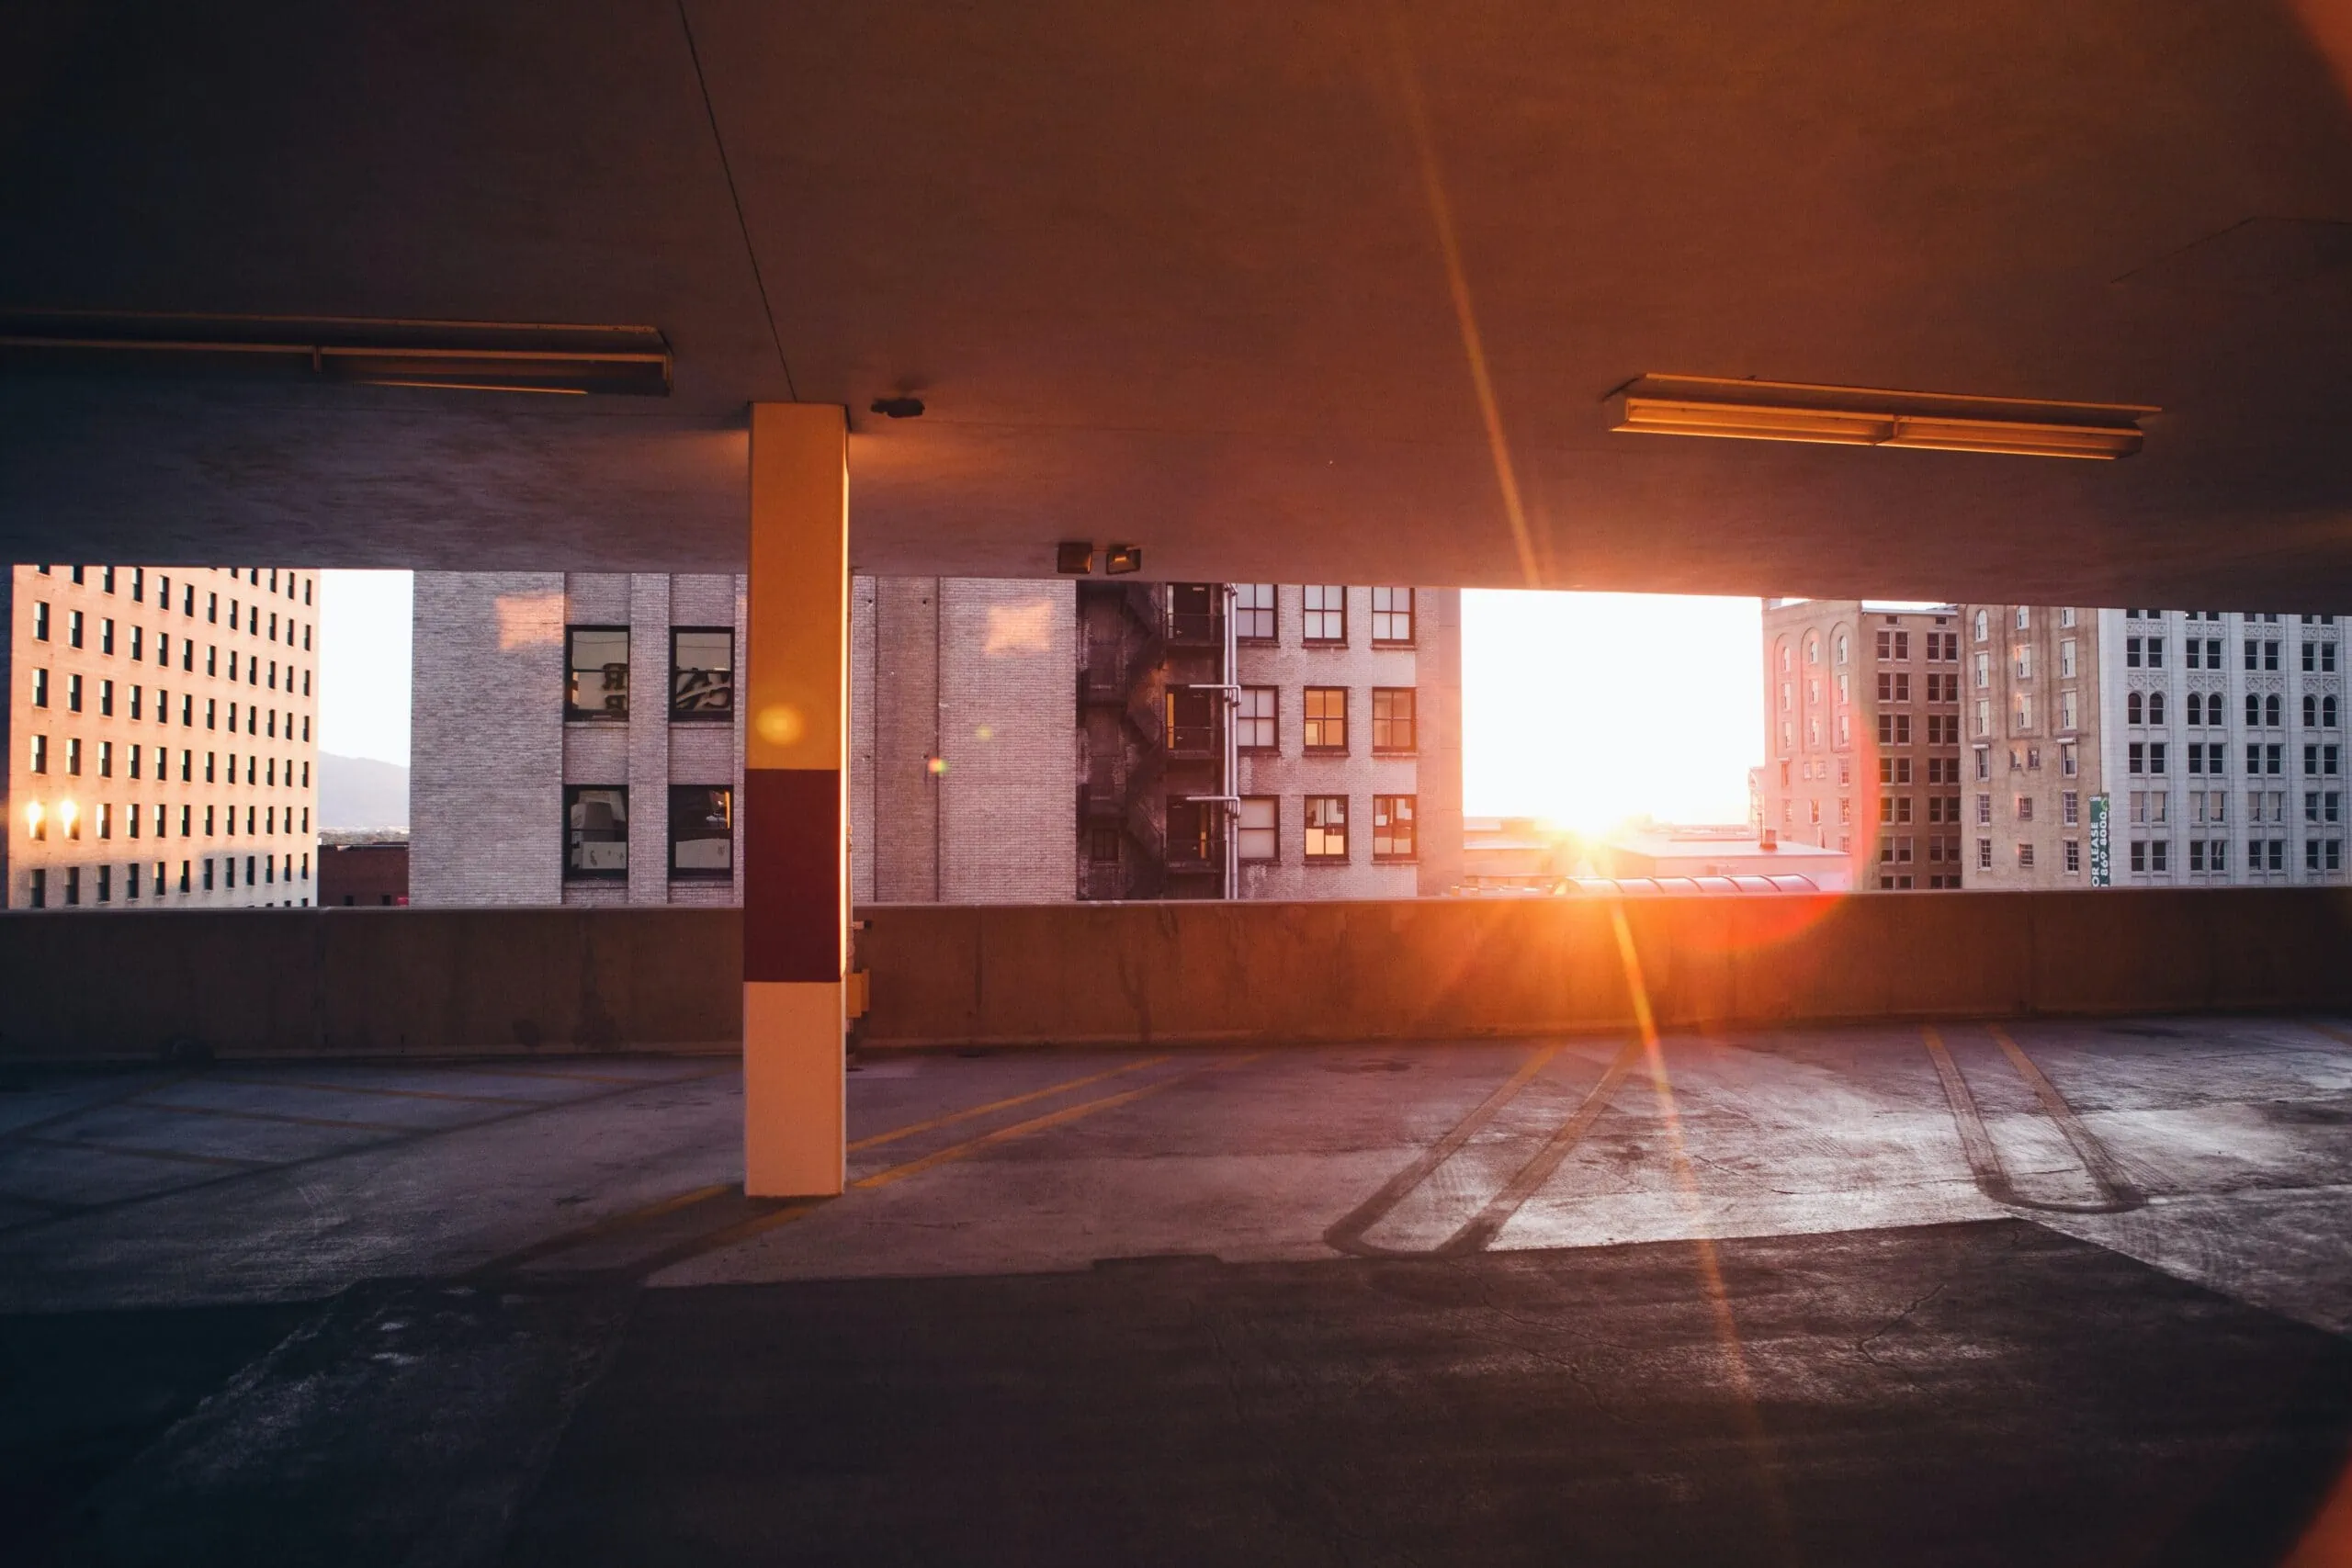 Empty parking garage with surveillance cameras at sunset